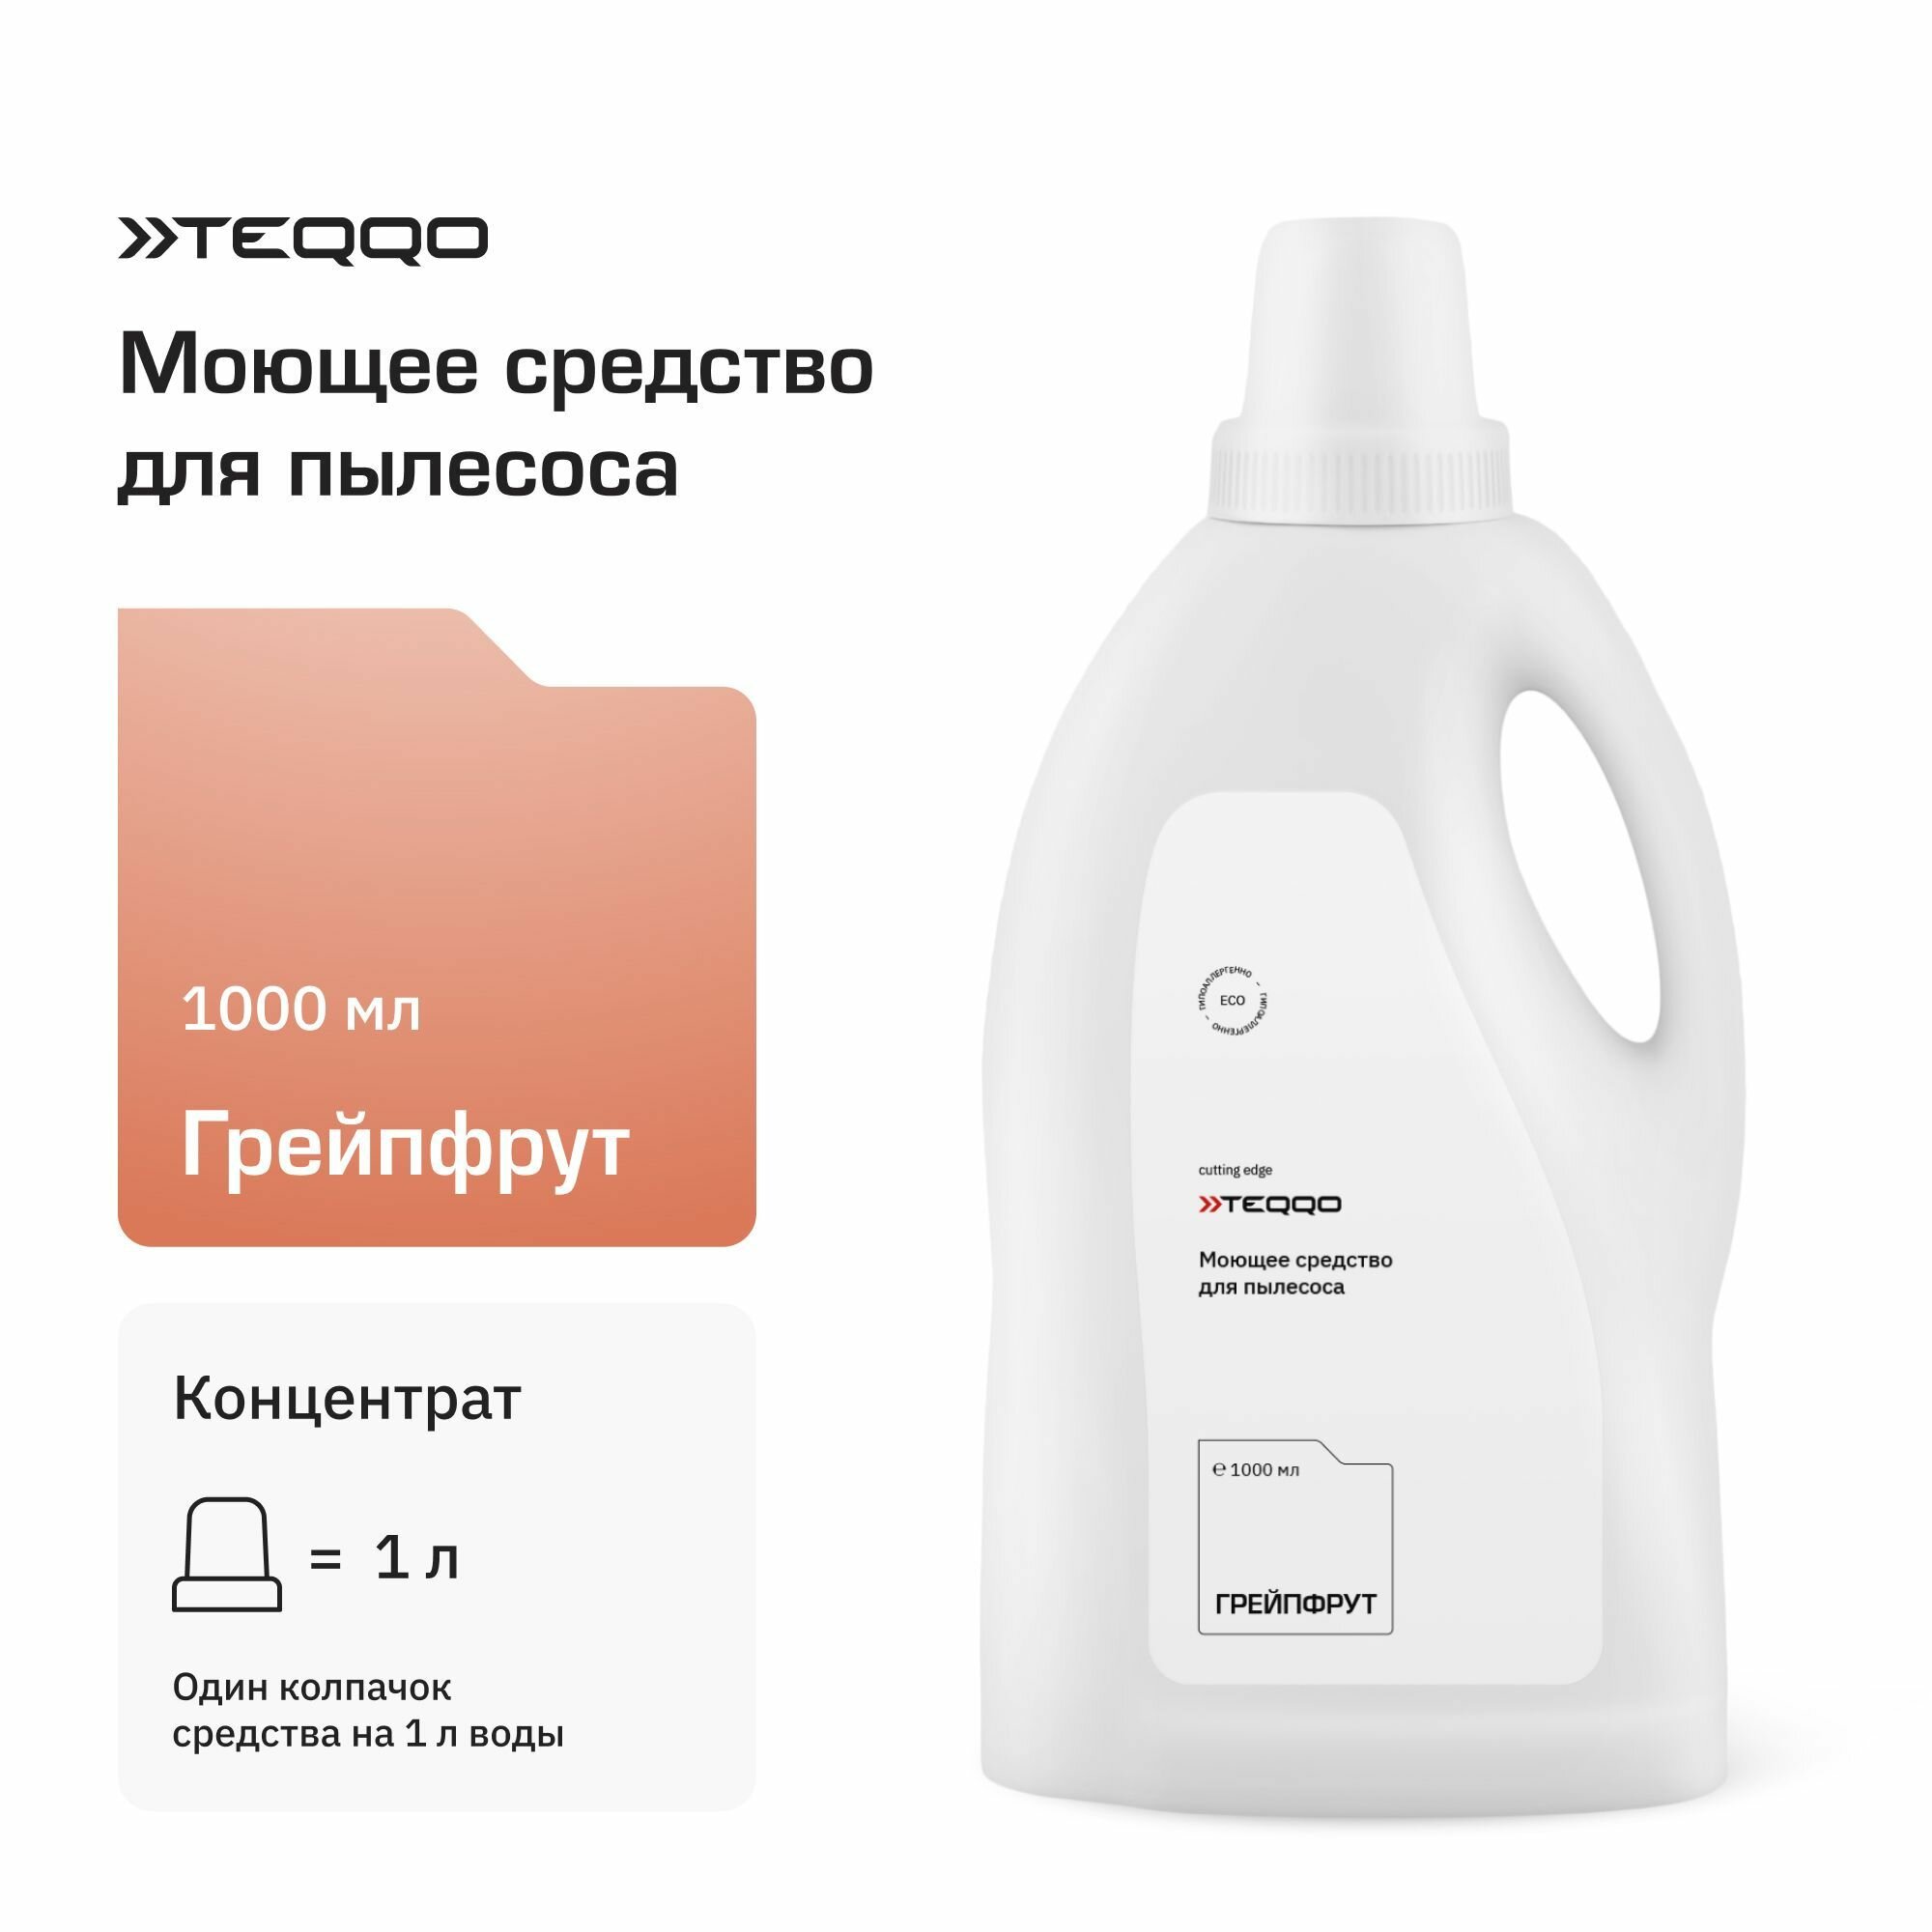 Моющее средство, средство по уходу за полом (1000) для пылесоса Teqqo Aquastick 3 в 1 (грейпфрут)